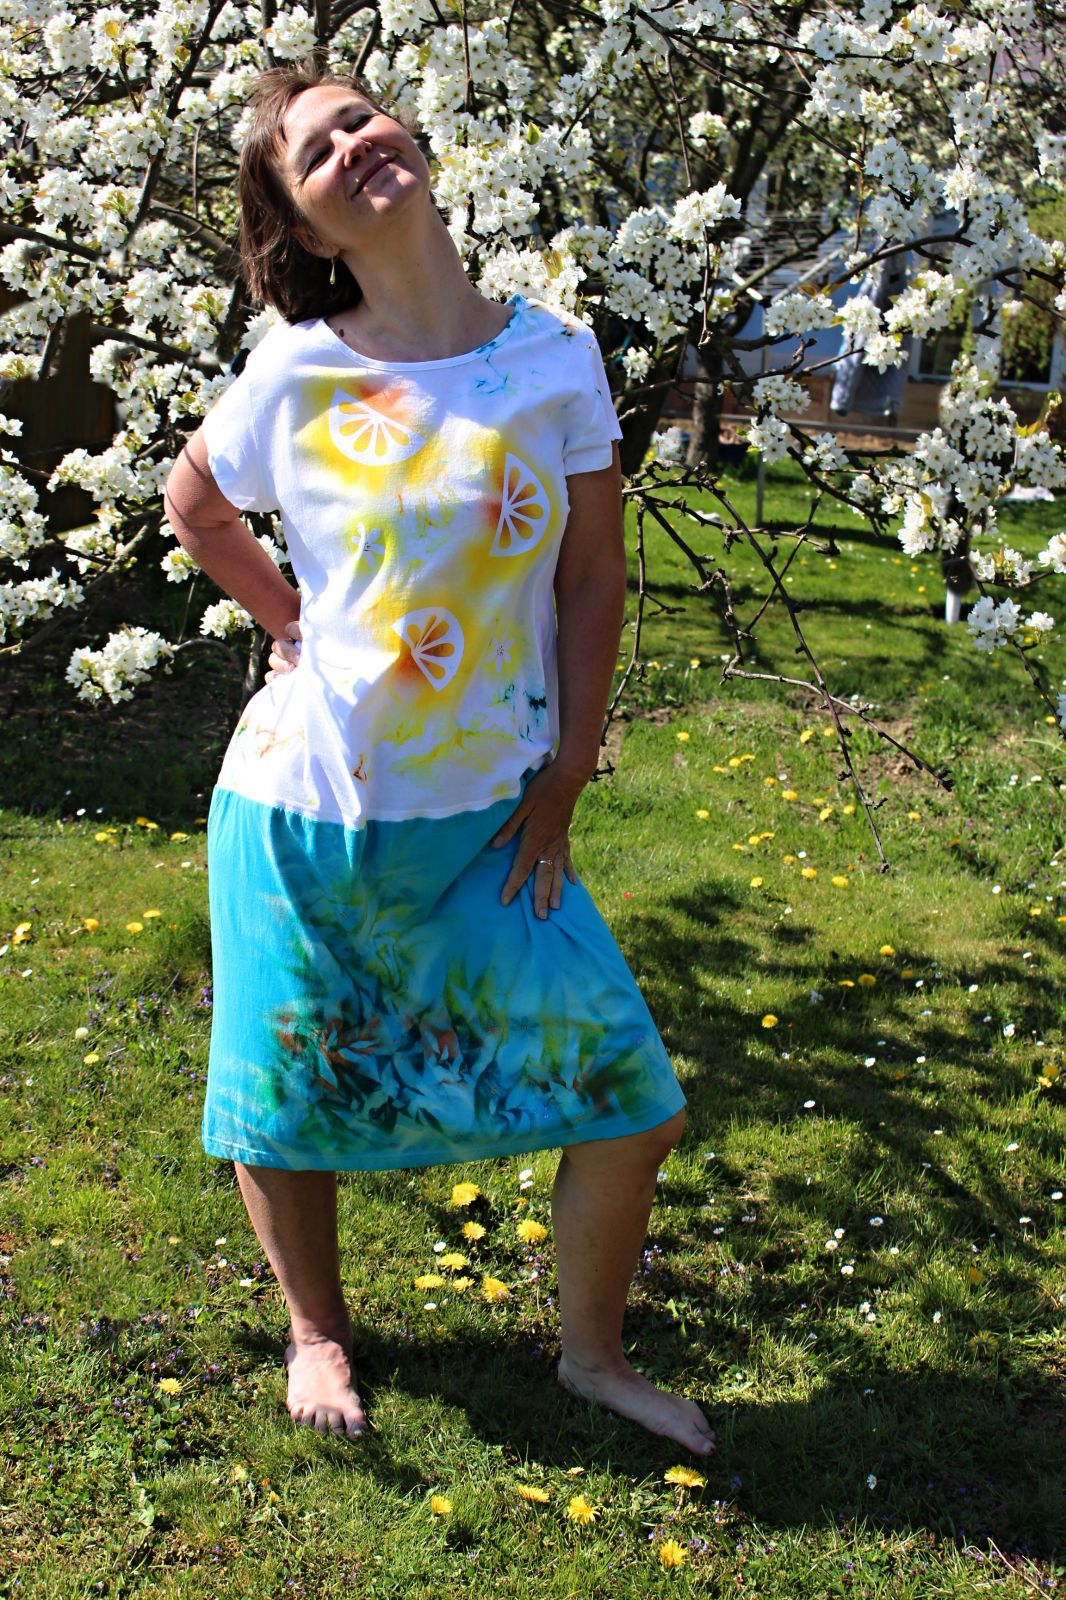 Malované batikované šaty - Citronáda, z autorské dílny z Olomouce - velikost 3XL Batitex - malovaná, batikovaná trička, šaty, mikiny, šátky, šály, kravaty